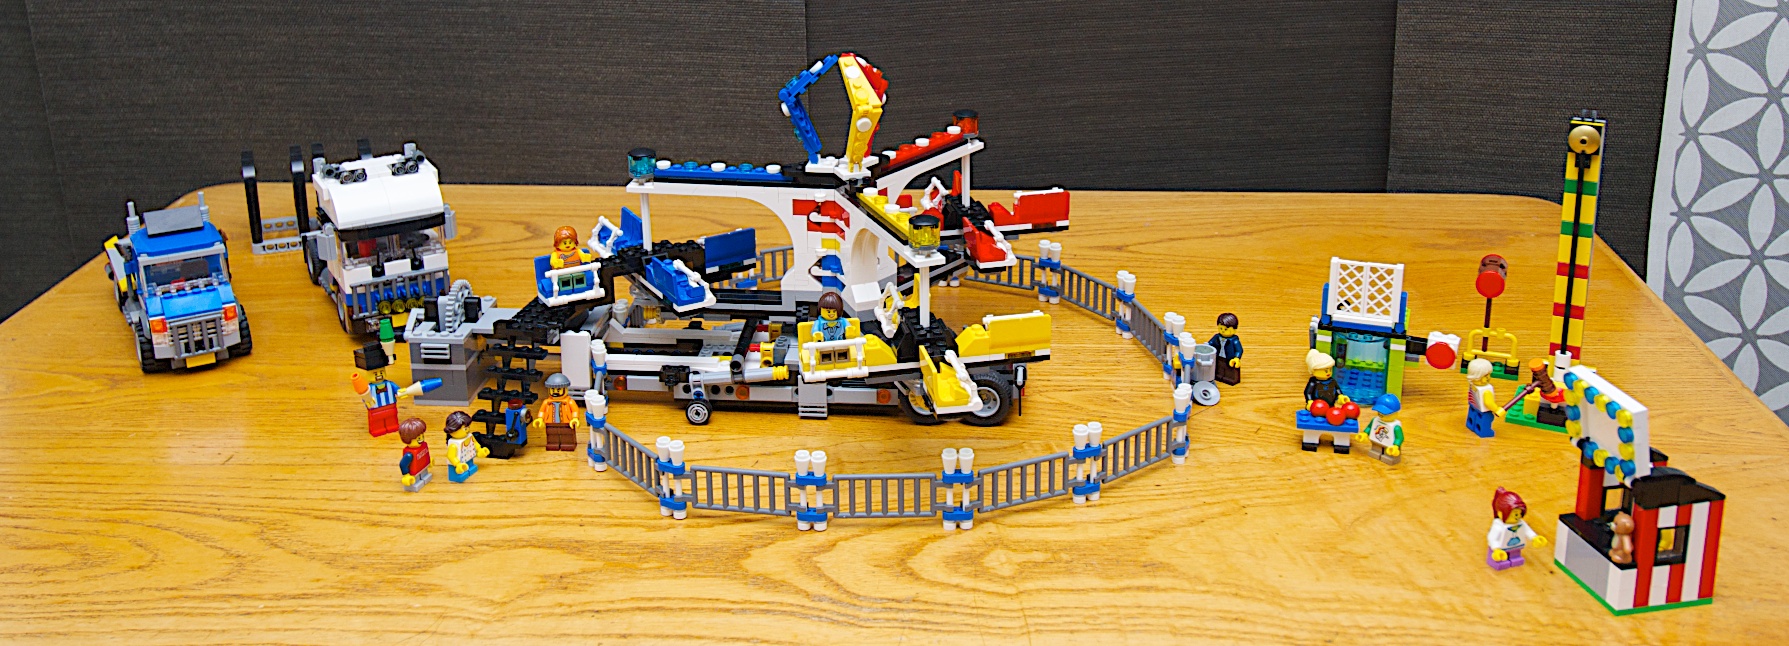 Lego Set 10244 The Fairground Mixer Review – minifigology